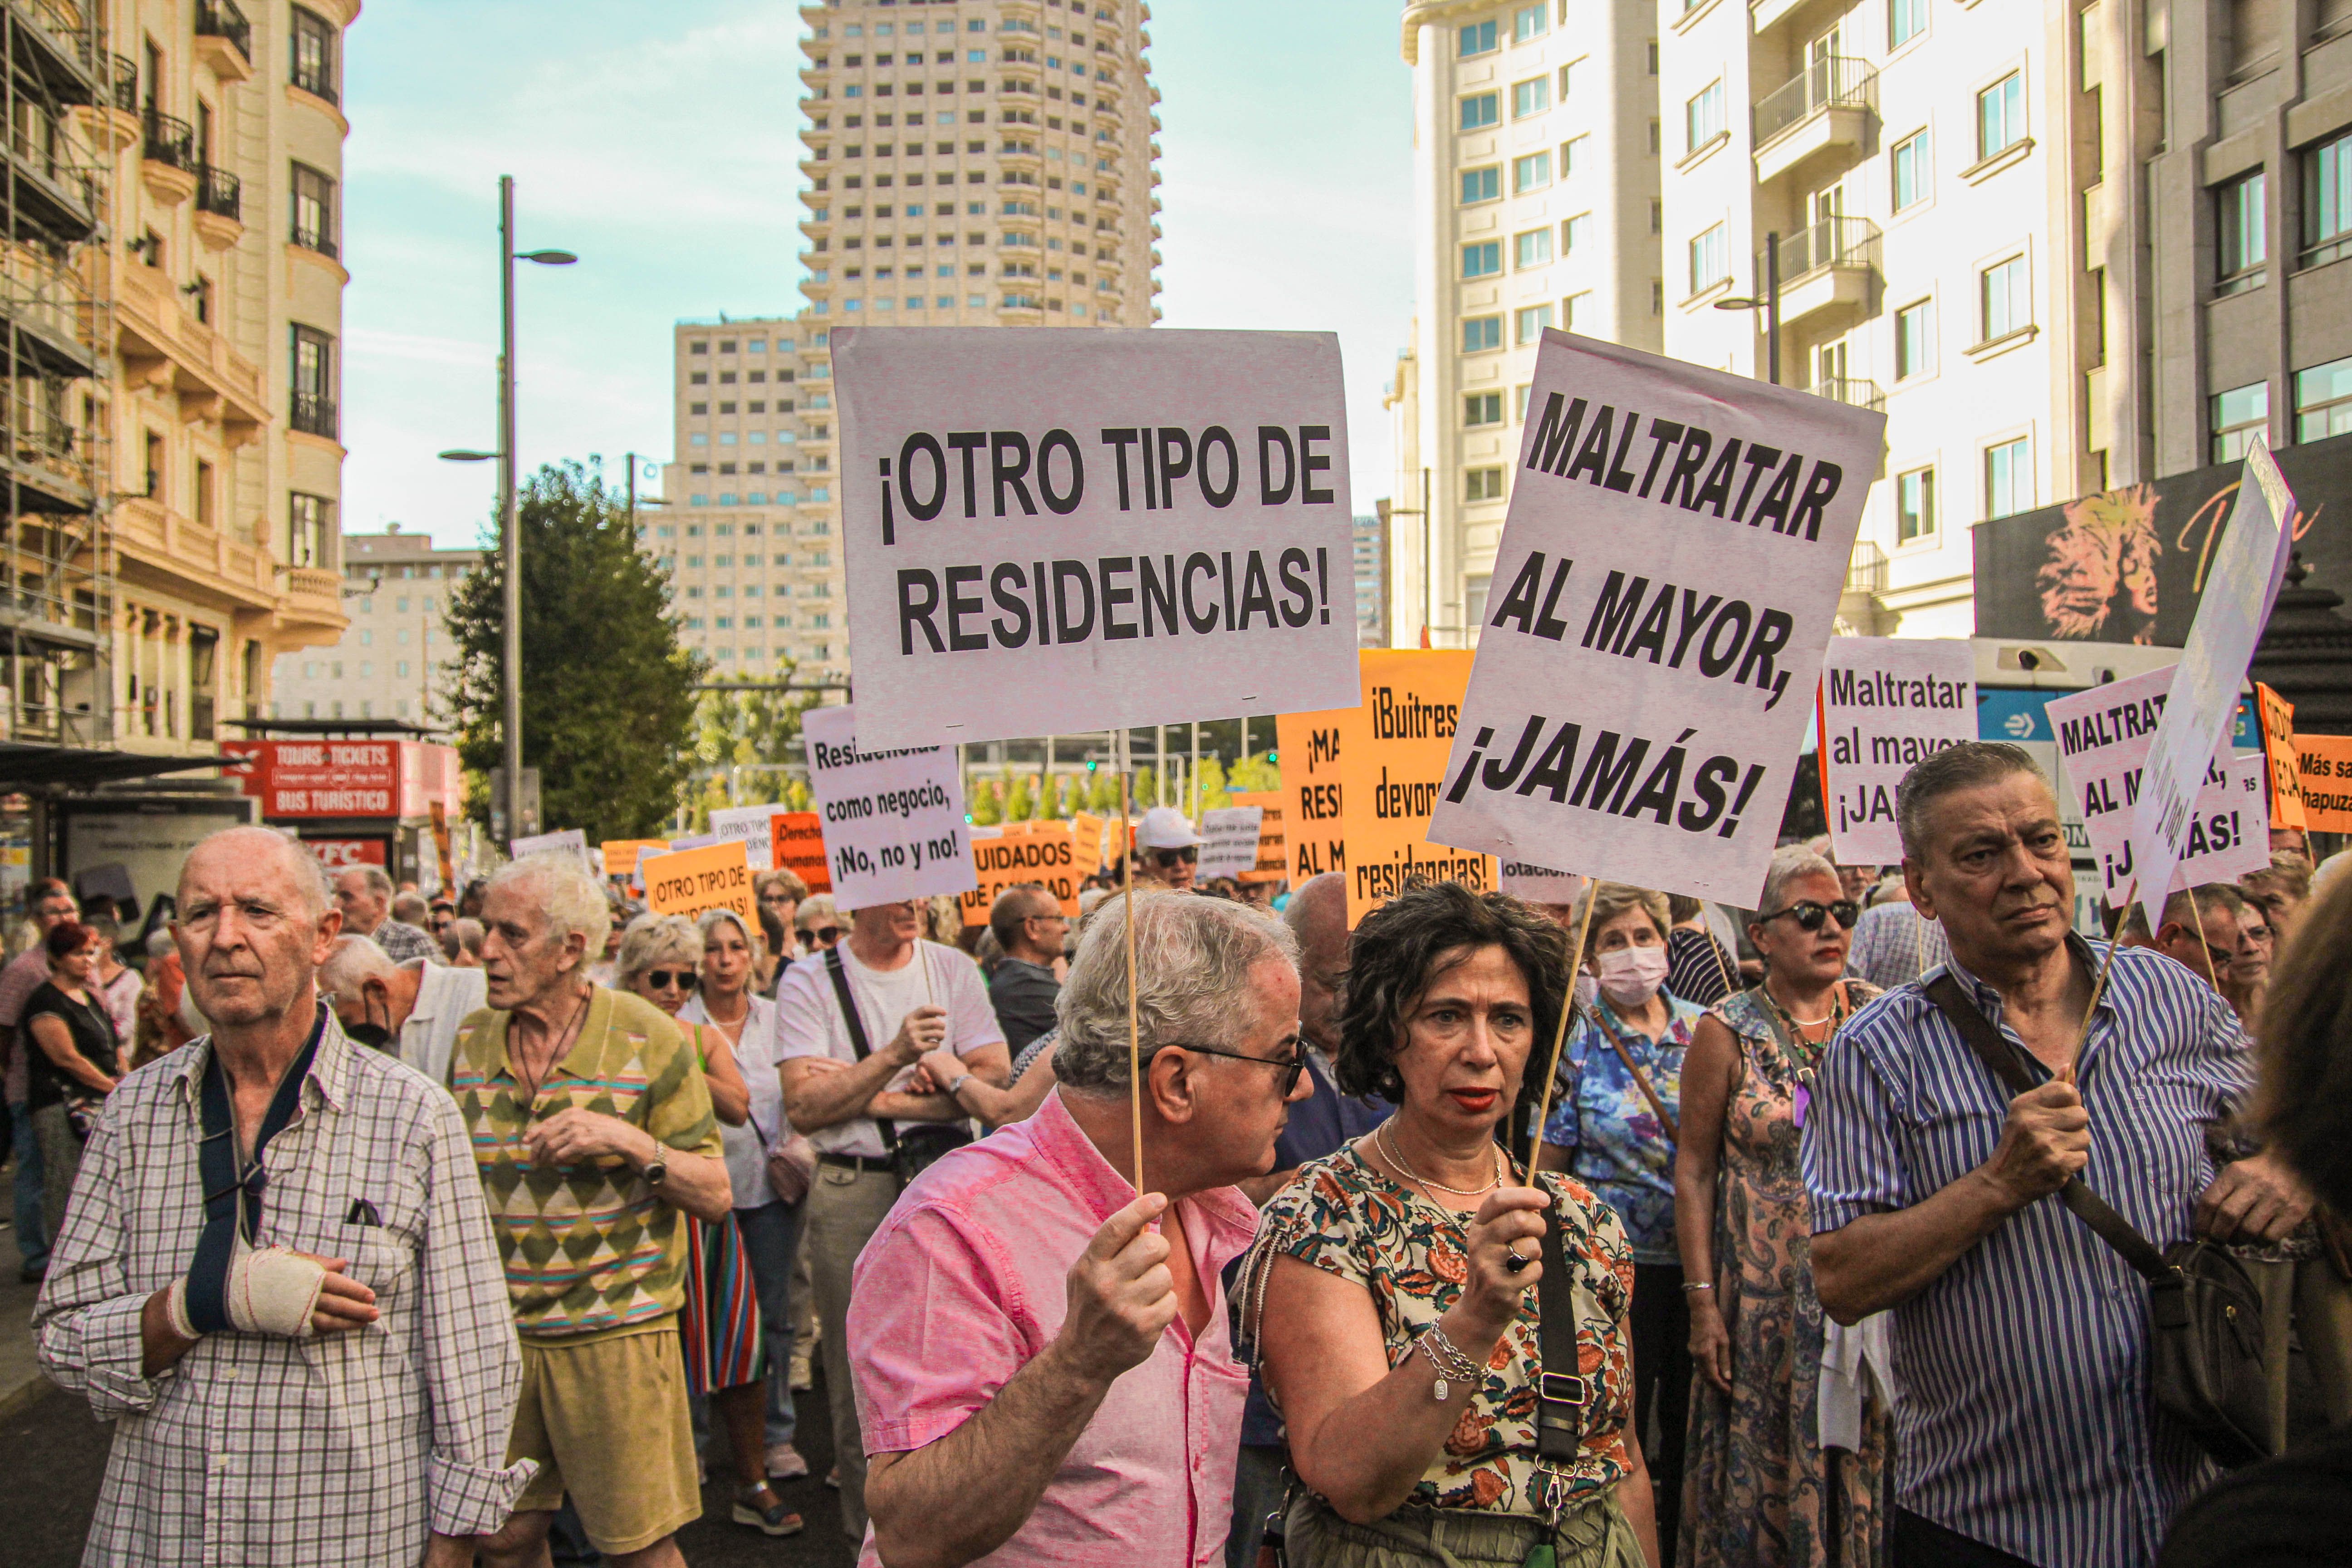 La Unión Ciudadana Por la Mejora de las Residencias alerta: "Se están violando los derechos humanos" Manifestación residencias 17 de septiembre Madrid (Foto: Álvaro Ríos y Pablo Recio)